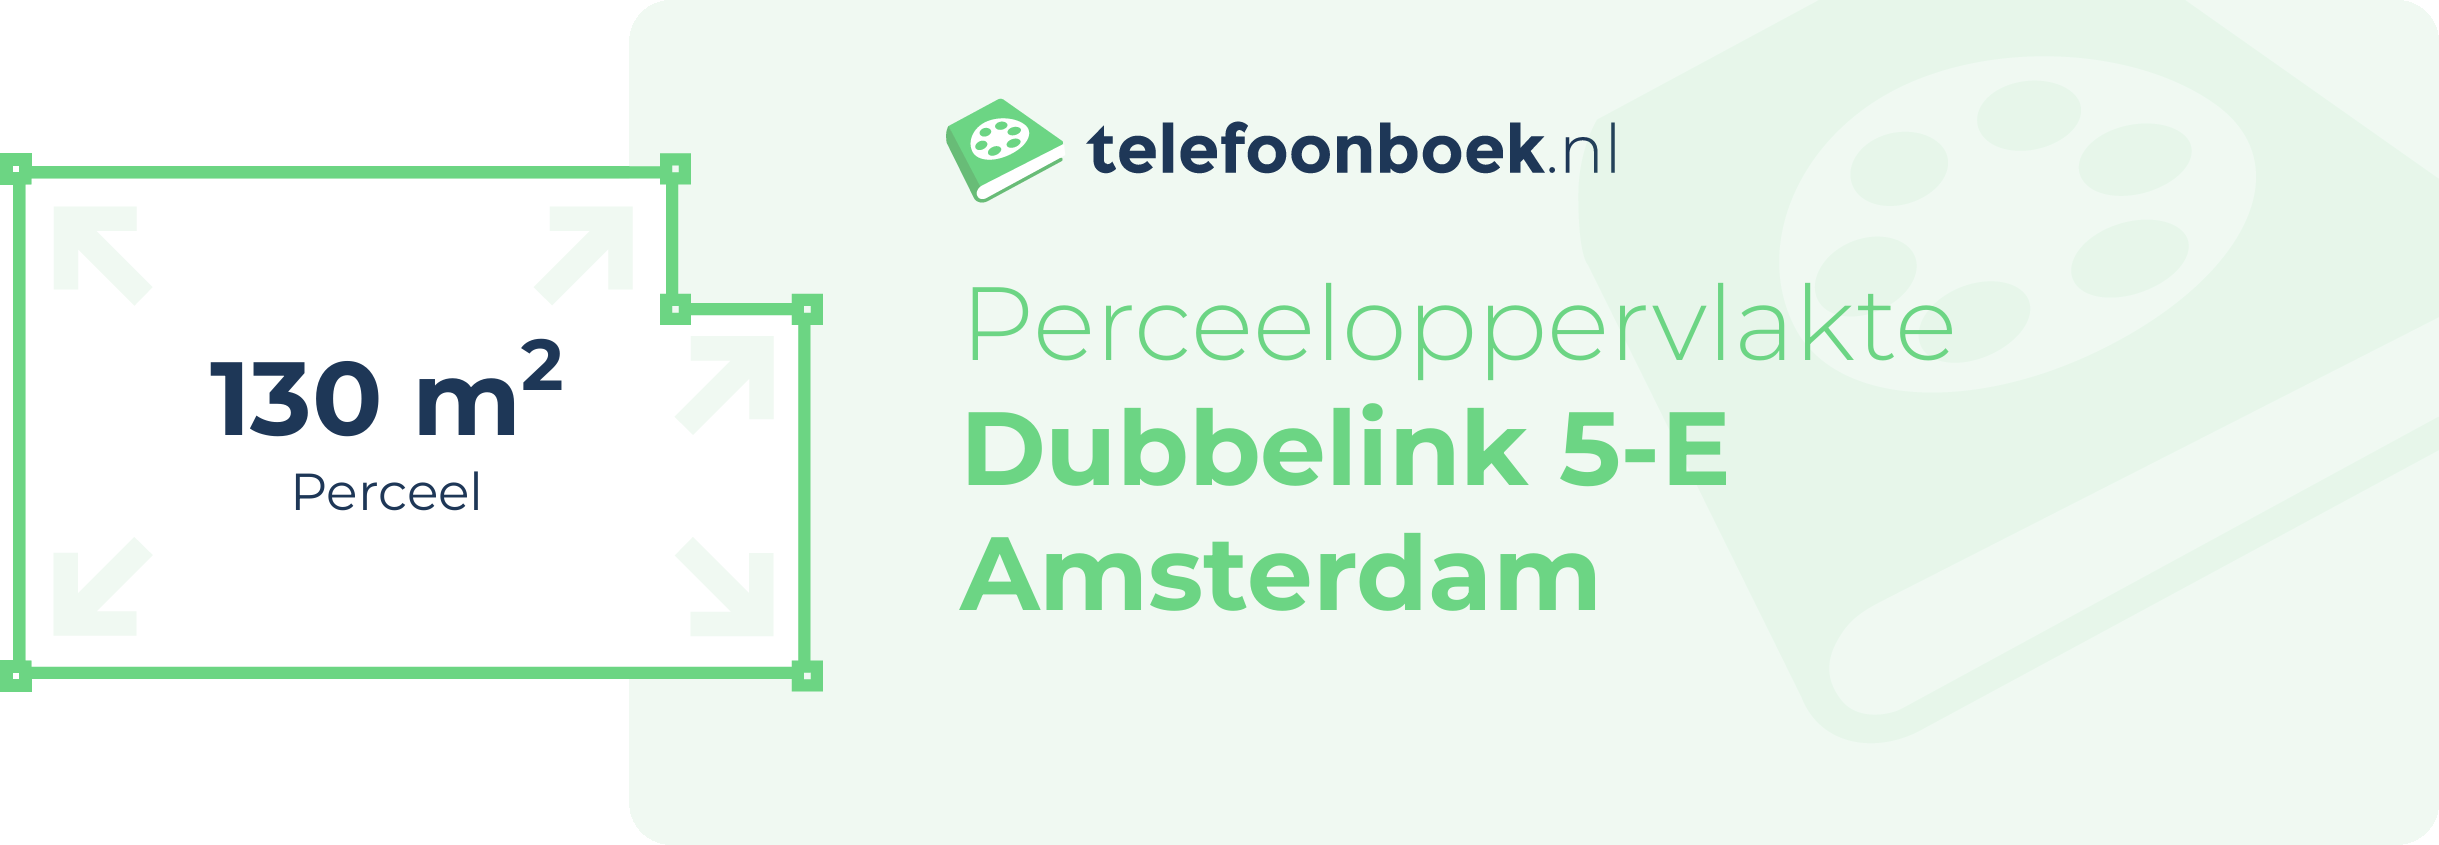 Perceeloppervlakte Dubbelink 5-E Amsterdam